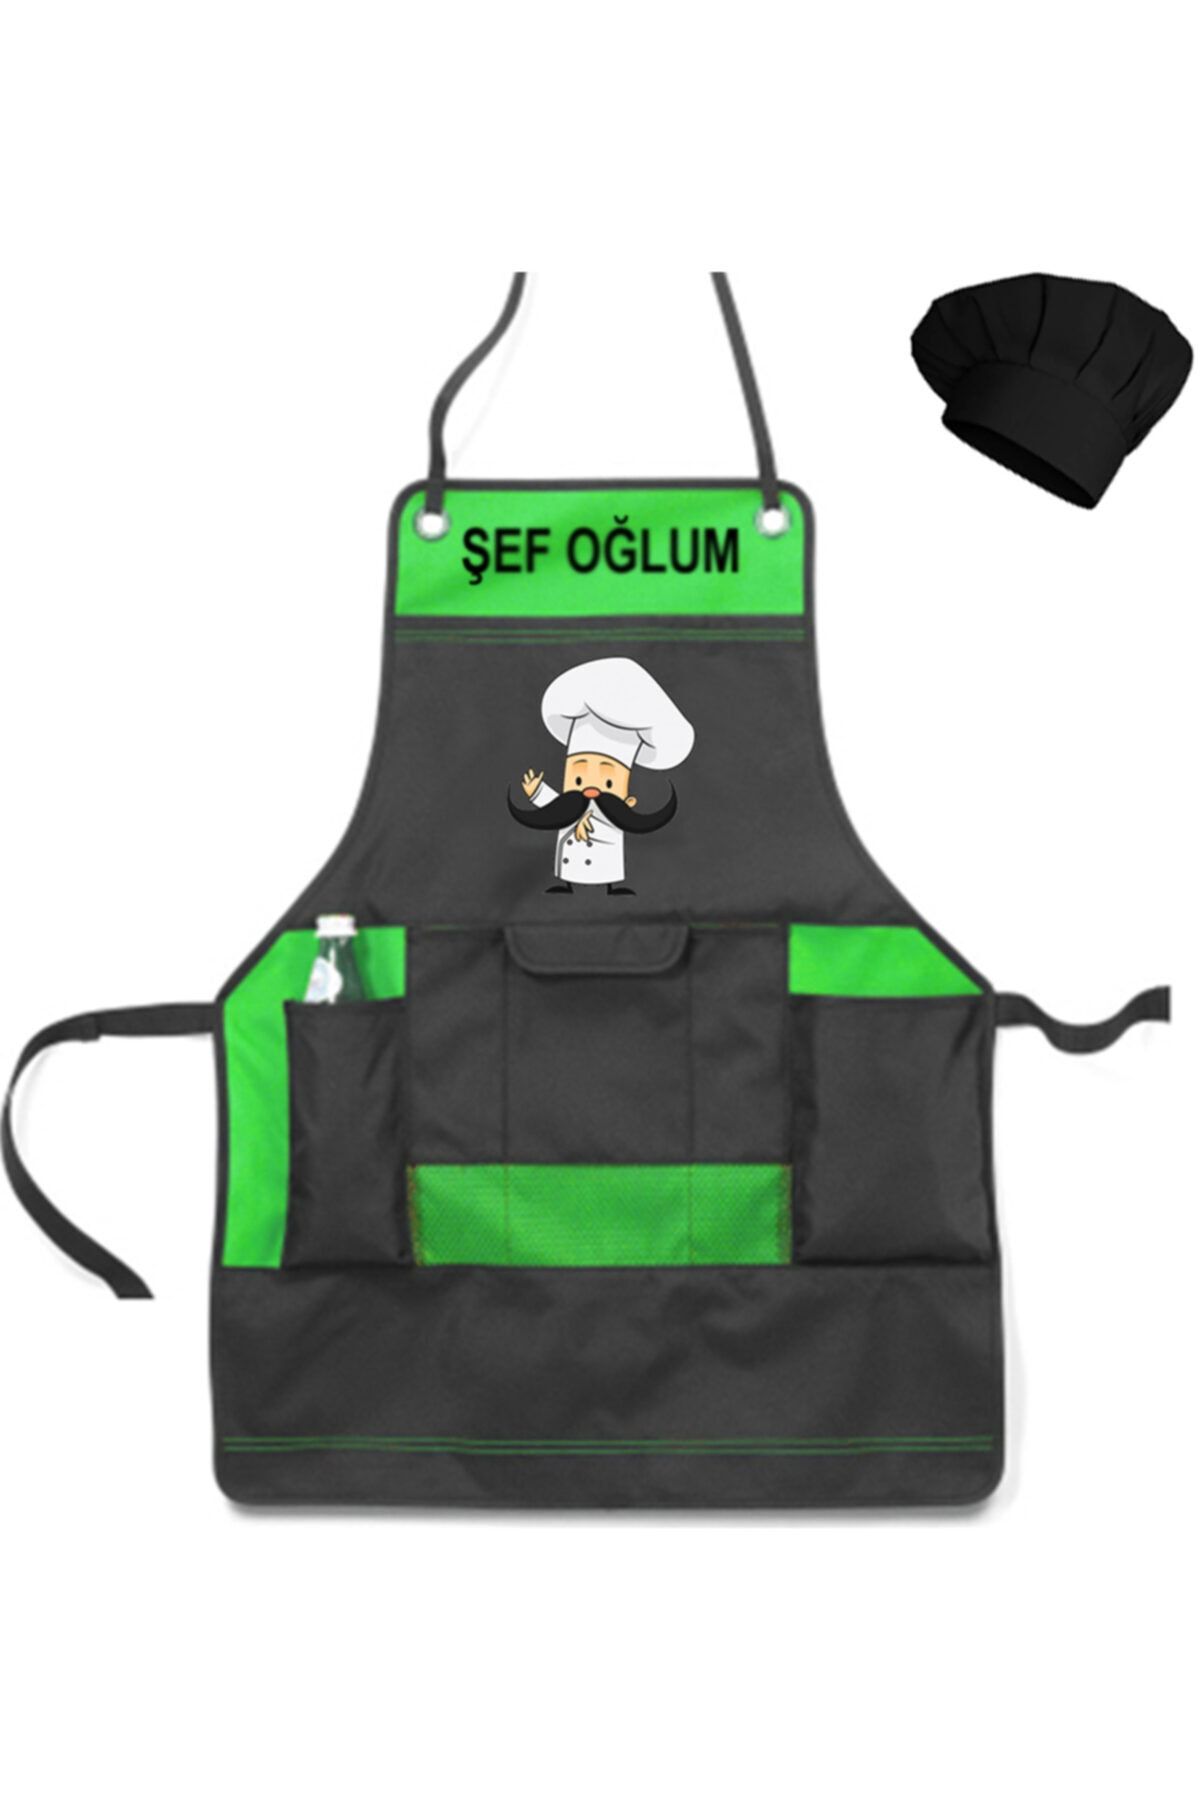 medusaforma Erkek Çocuk Aşçı Kıyafeti Master Şef Chef Çocuk Mutfak Önlüğü Kostüm Askılı Önlük - Yeşil